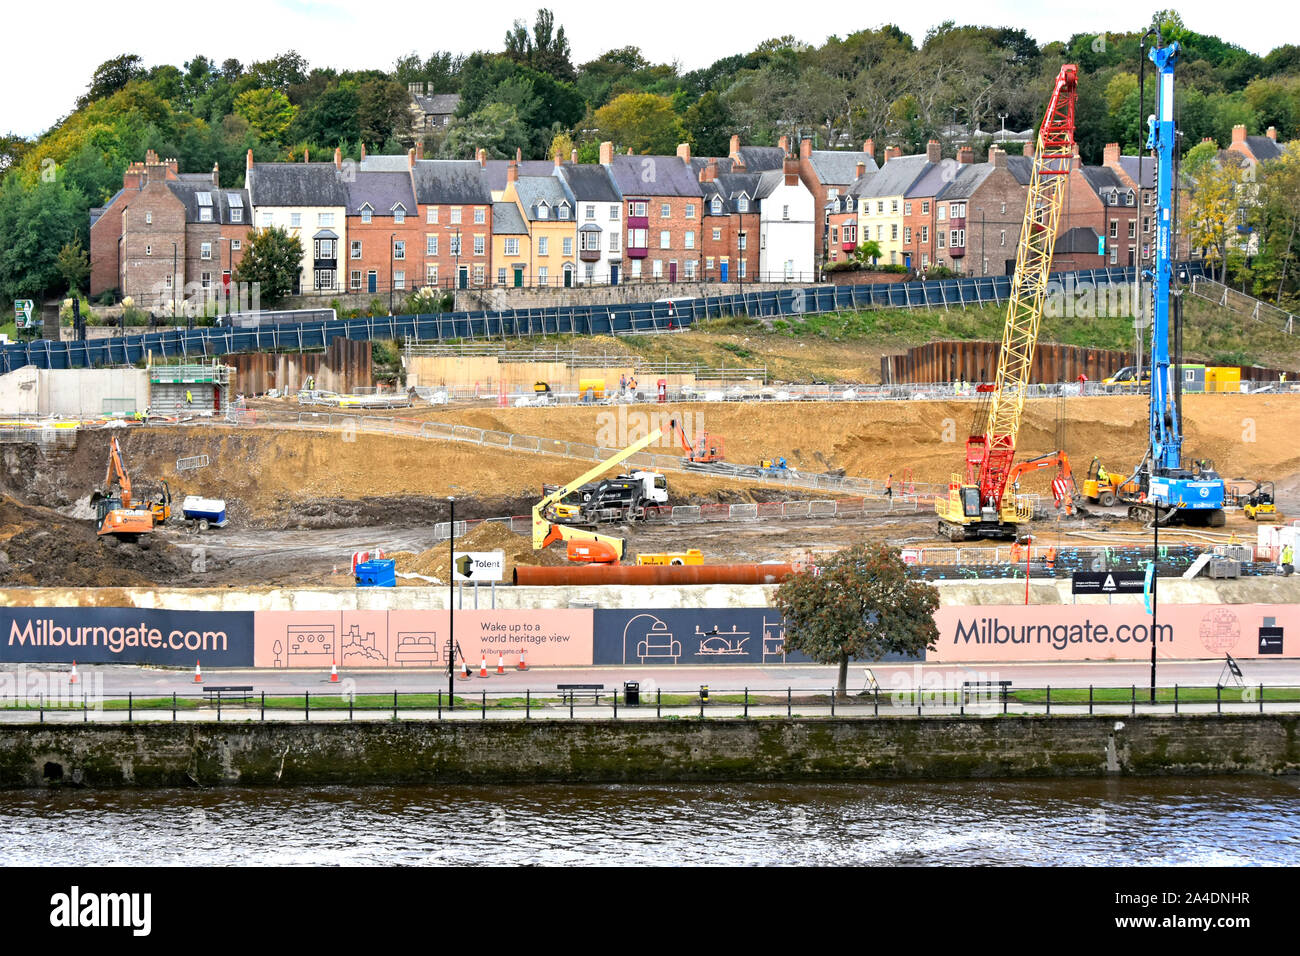 Pieux de fondation Travaux sur chantier de construction Milburngate au développement de la propriété à usage mixte à côté de l'usure de la rivière en face de l'habitation à Durham UK Banque D'Images